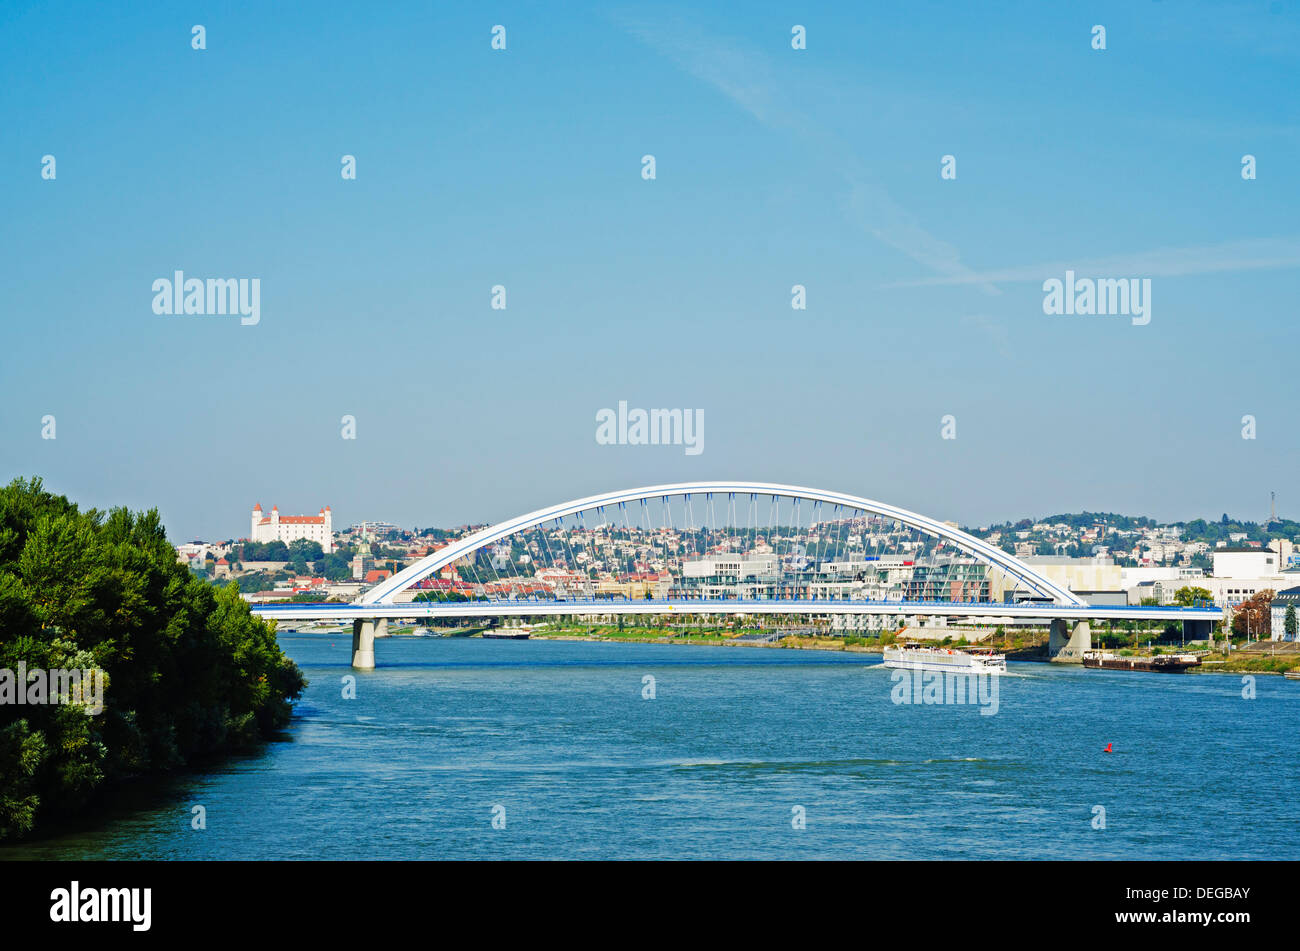 Apollo Most bridge, Bratislava Castle, Danube River, Bratislava, Slovakia, Europe Stock Photo